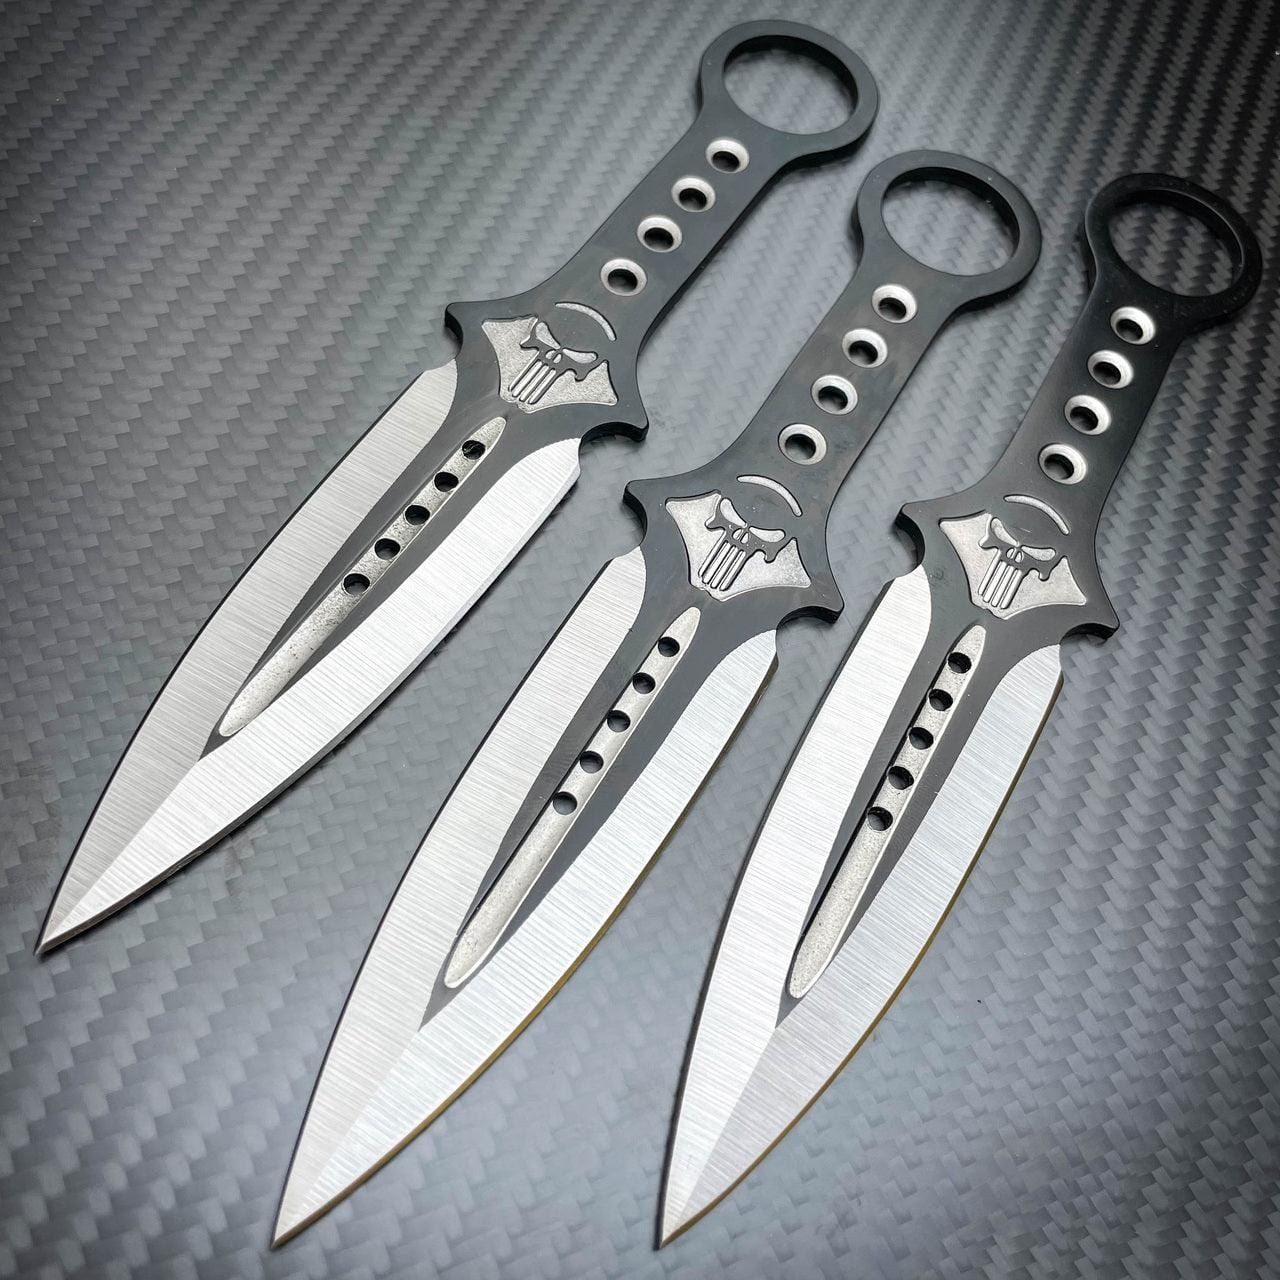 3 Pc 7.5 Ninja Tactical Combat Kunai Throwing Knife Set wit